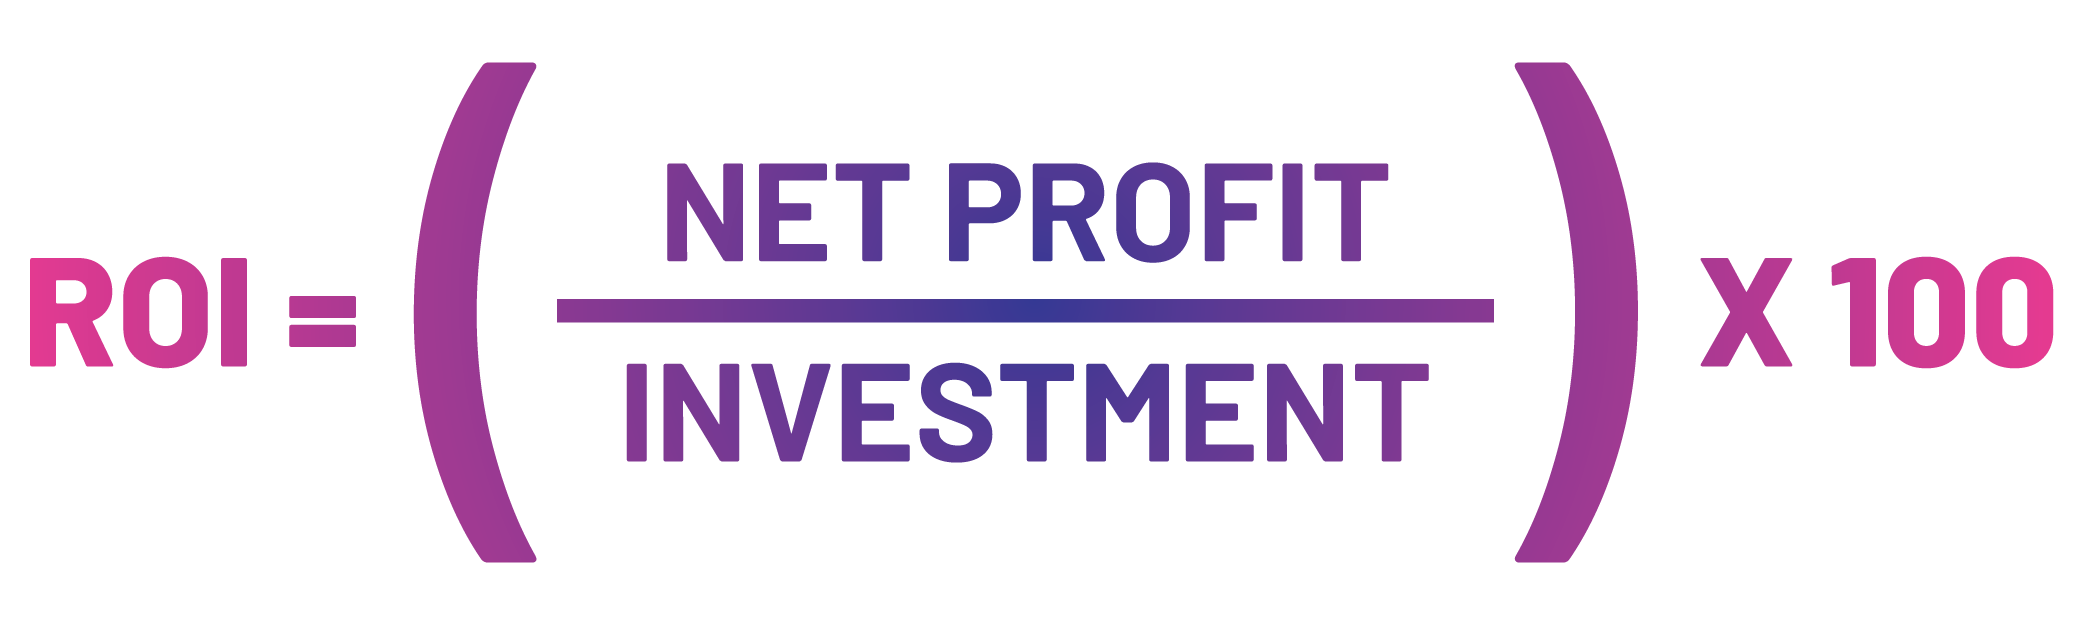 return on investment (roi) | netprofit